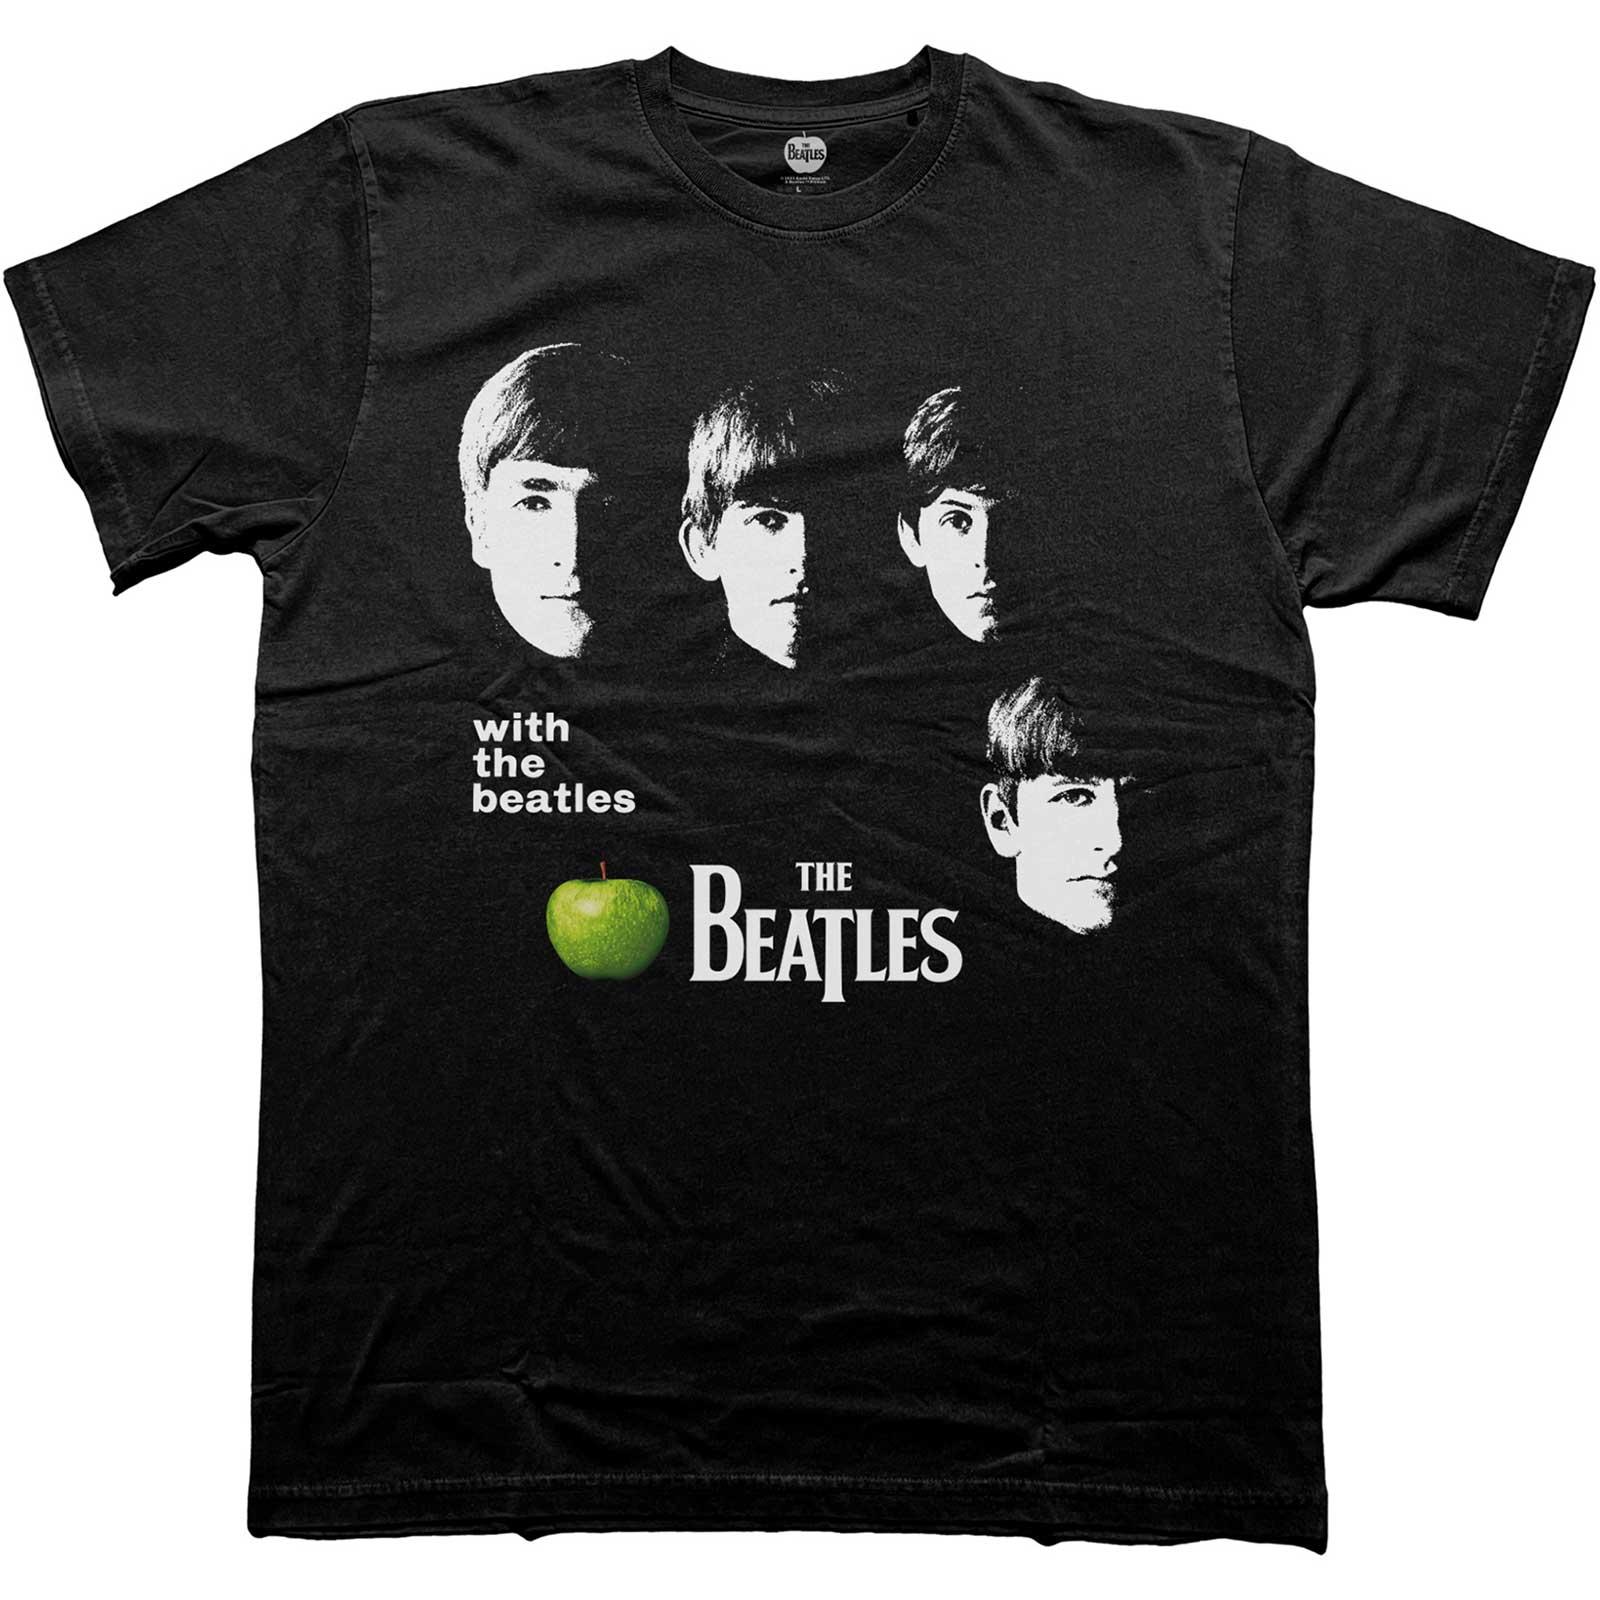 (ビートルズ) The Beatles オフィシャル商品 ユニセックス We The Beatles Apple Tシャツ コットン 半袖 トップス 【海外通販】